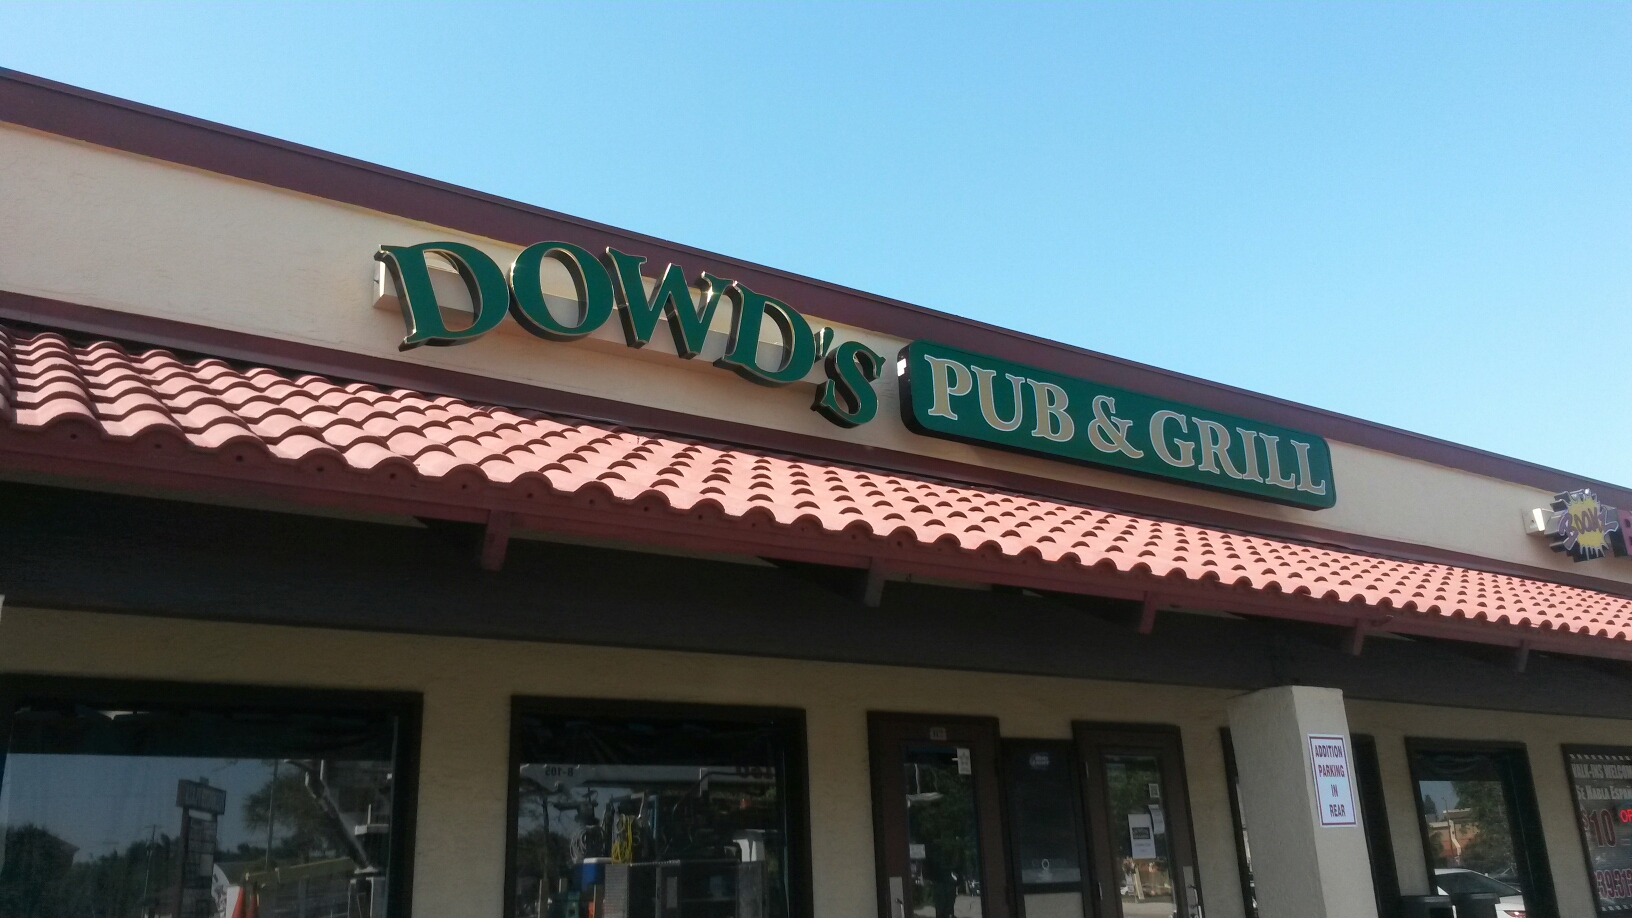 Dowd's Pub & Grill